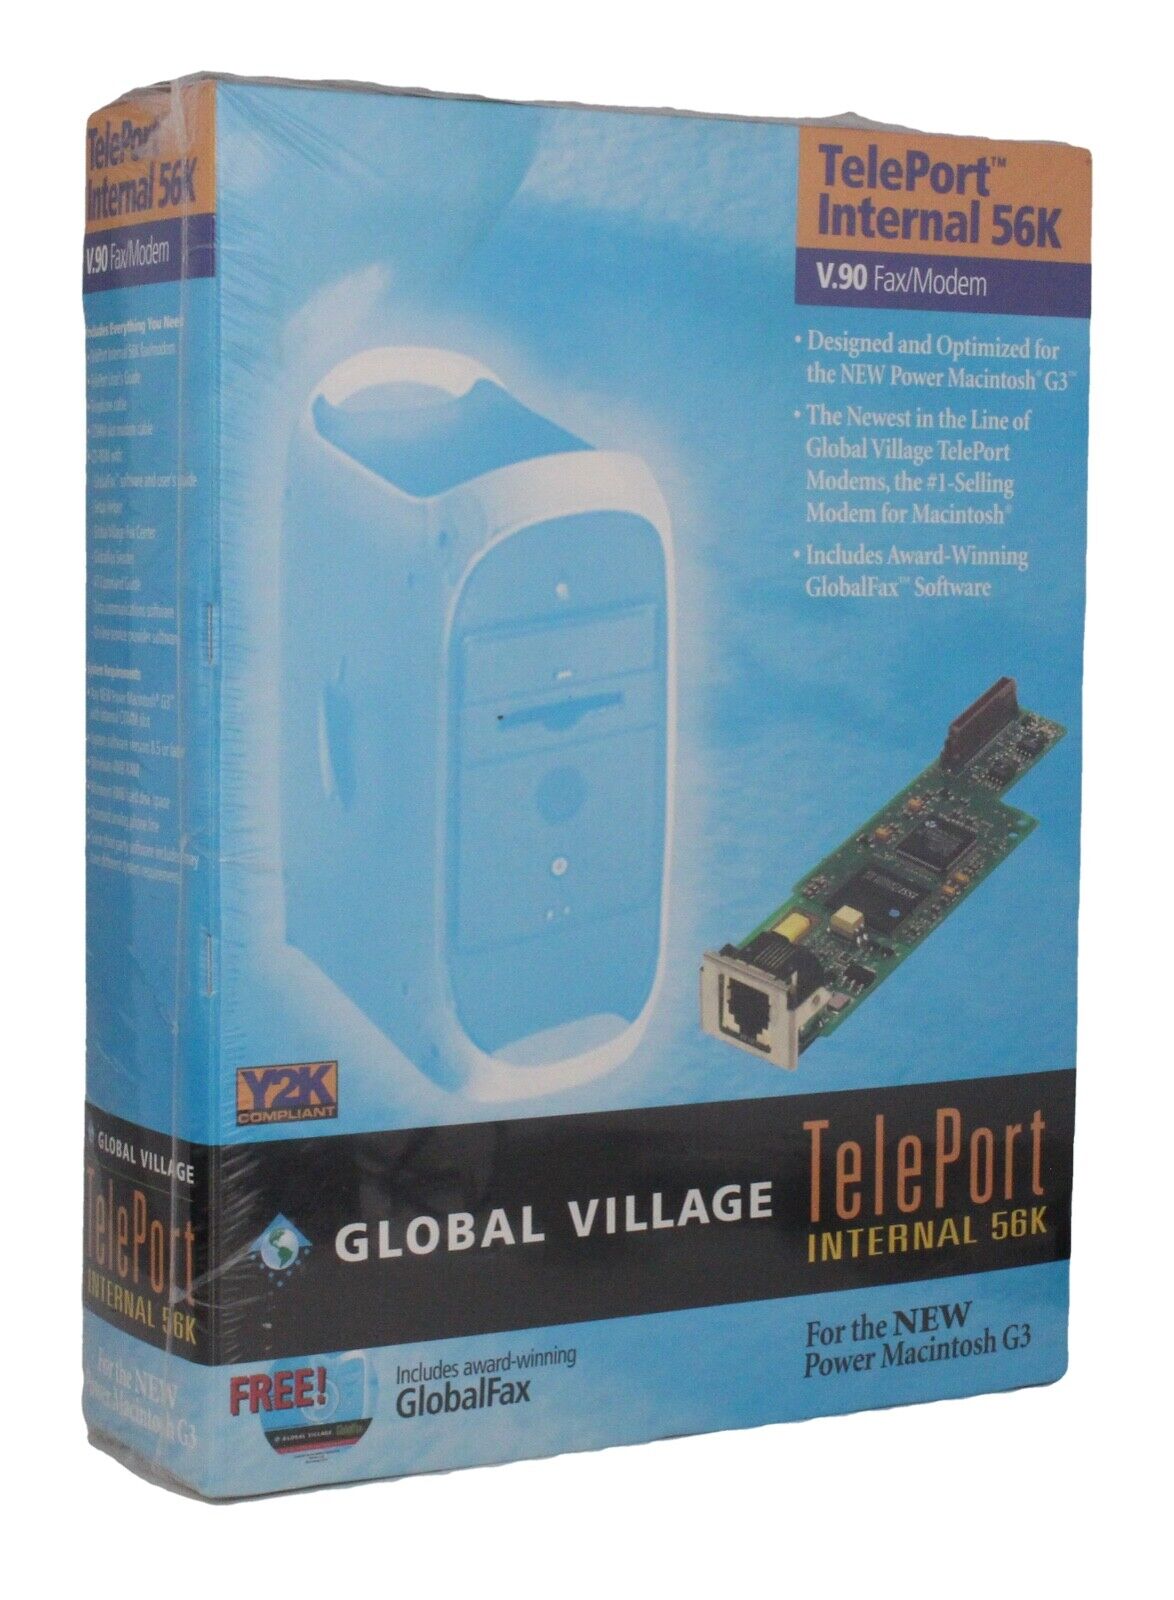 Global Village 56k V.90 Internal G3 G4 teleport modem for vintage iMacs etc NEW